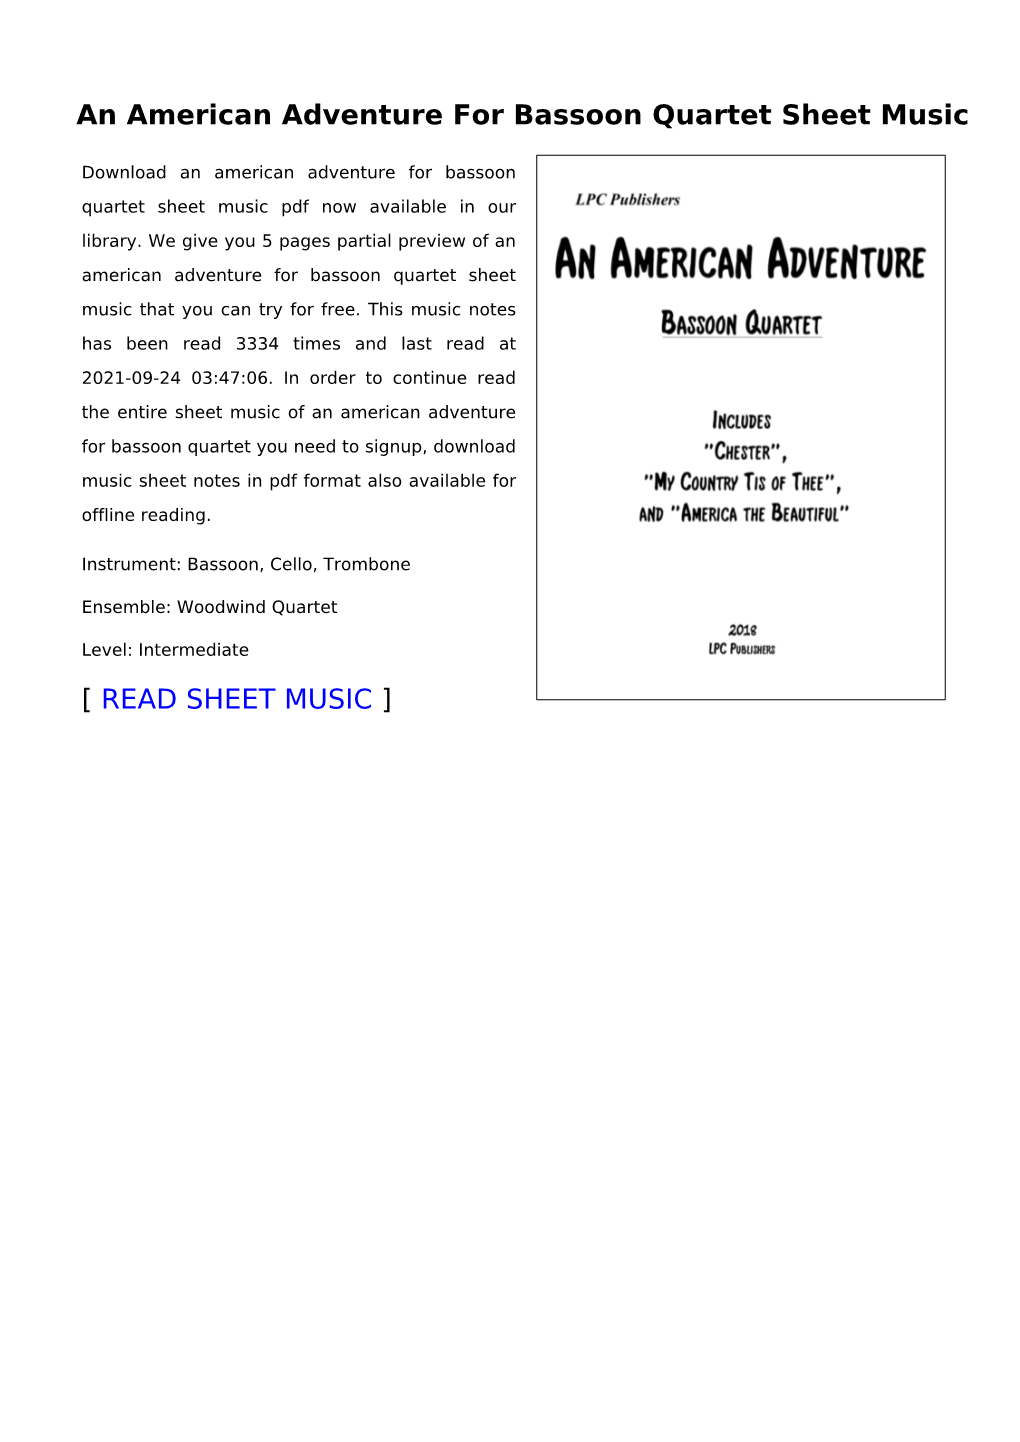 An American Adventure for Bassoon Quartet Sheet Music